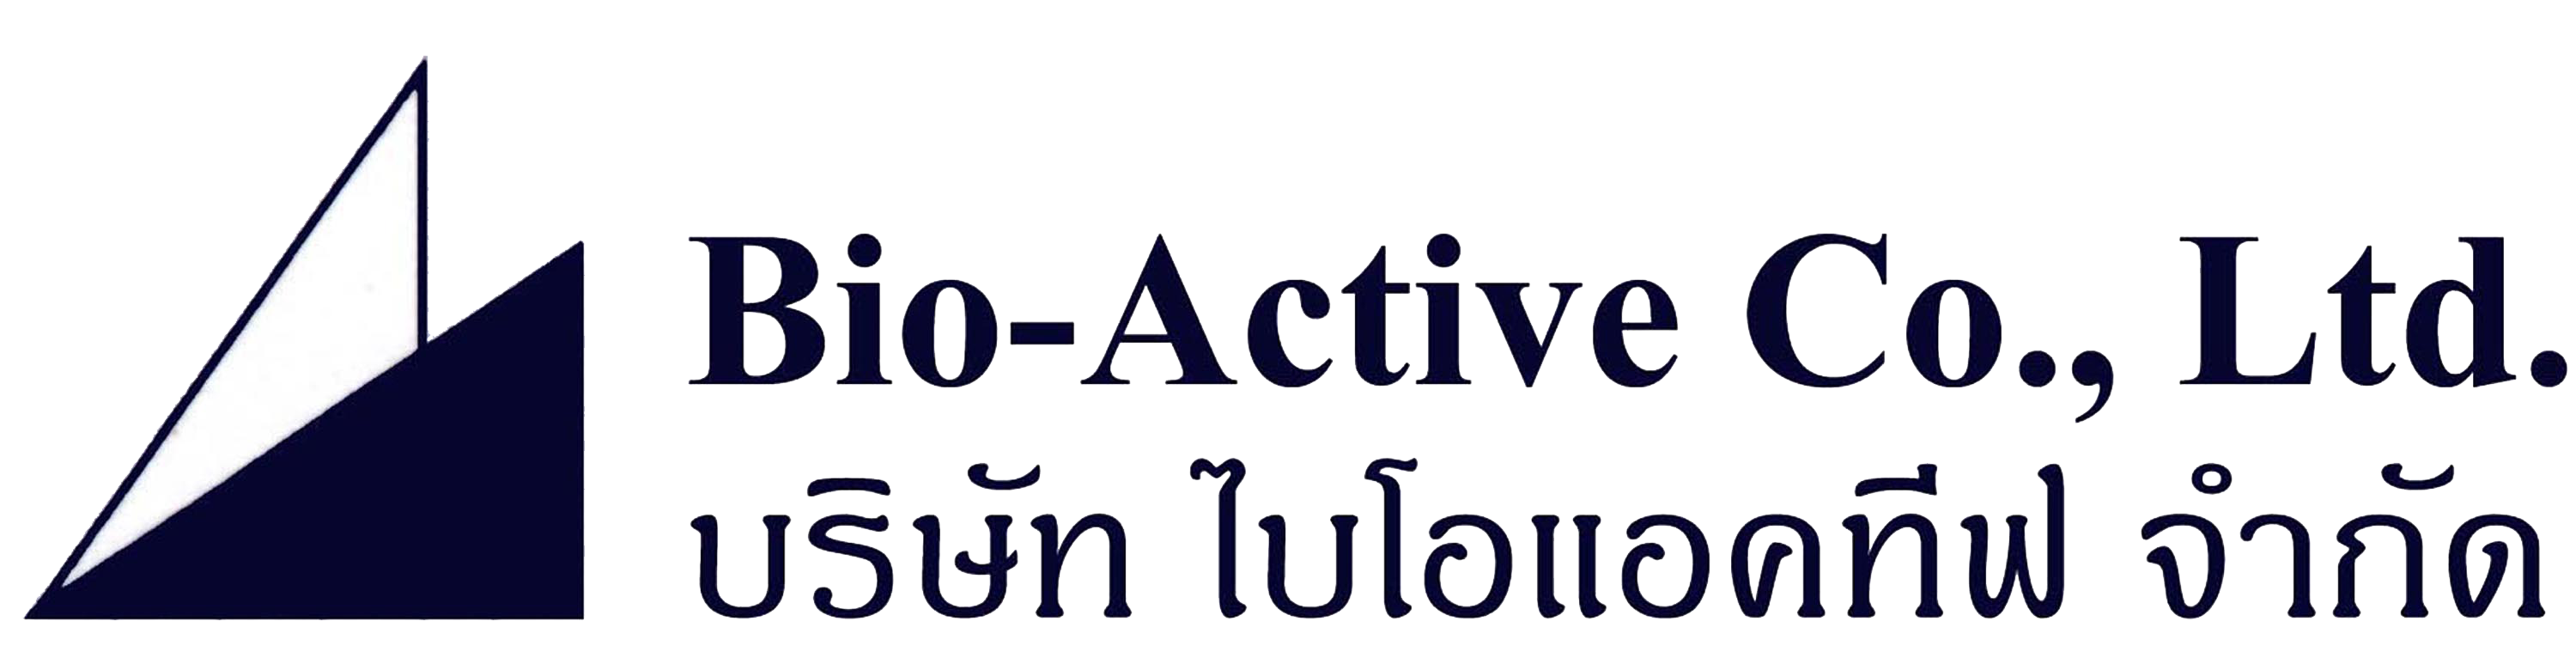 Bio-Active Co., Ltd.